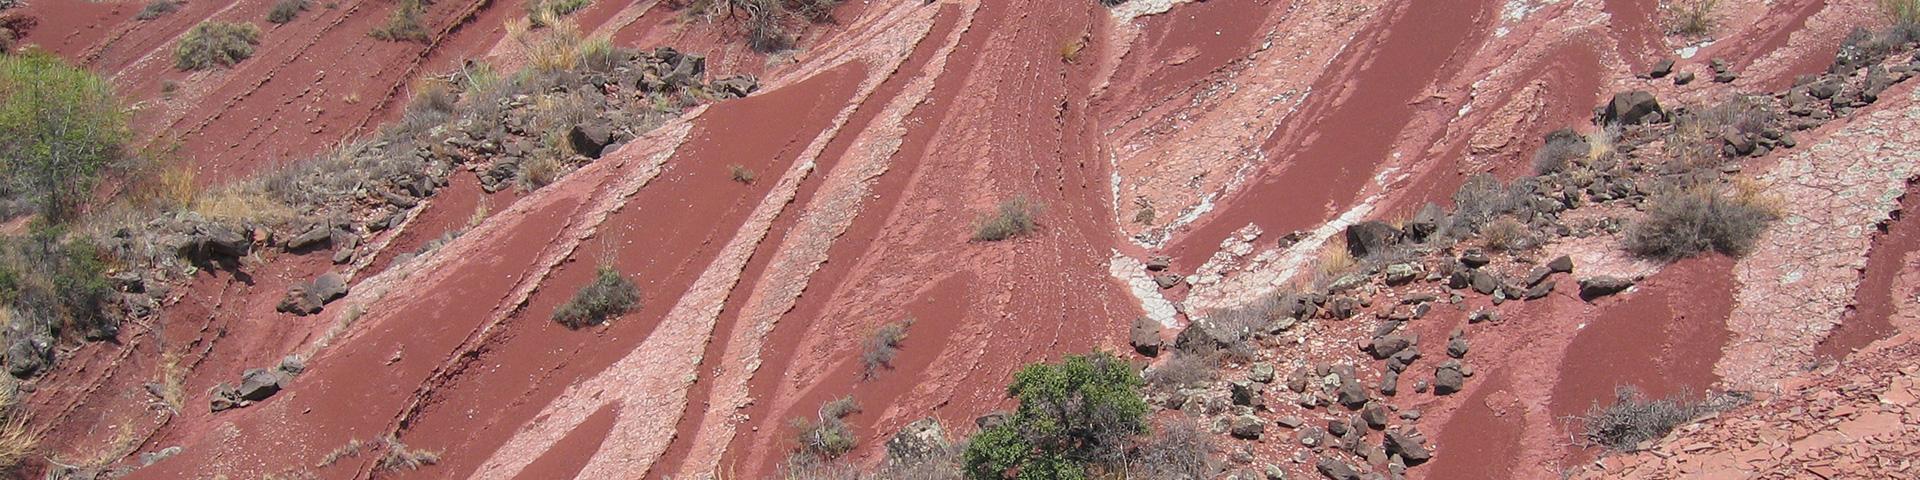 Erosion gullies in iron oxide-bearing, Herault